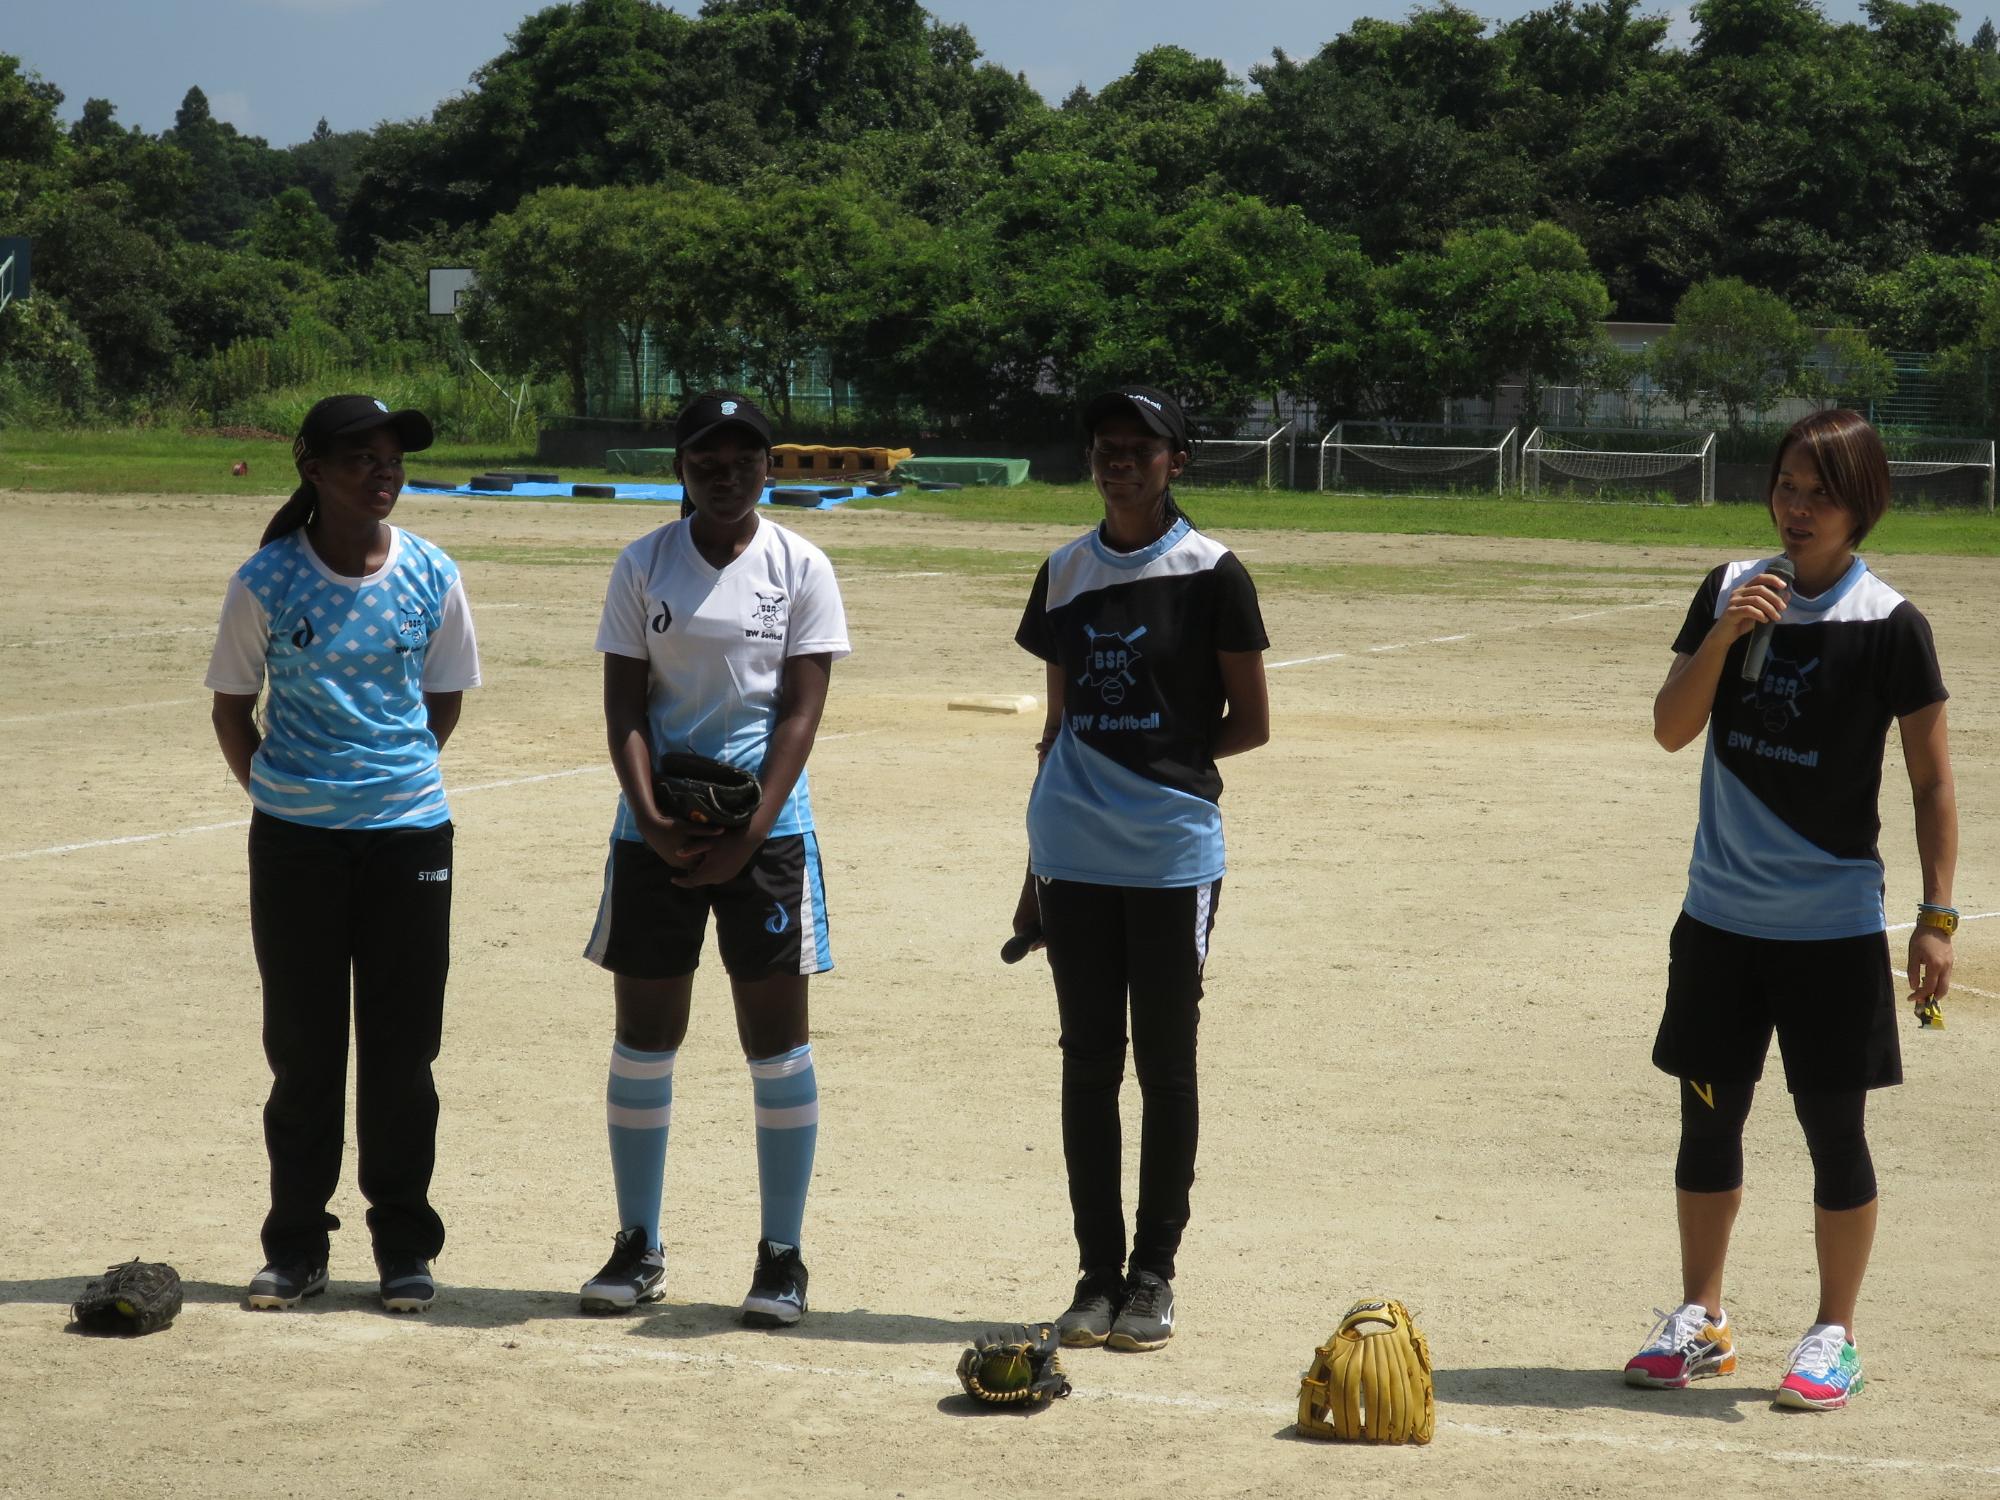 ボツワナの選手3名が立っており、右端の女性がマイクを持って話をしている交流会の様子の写真